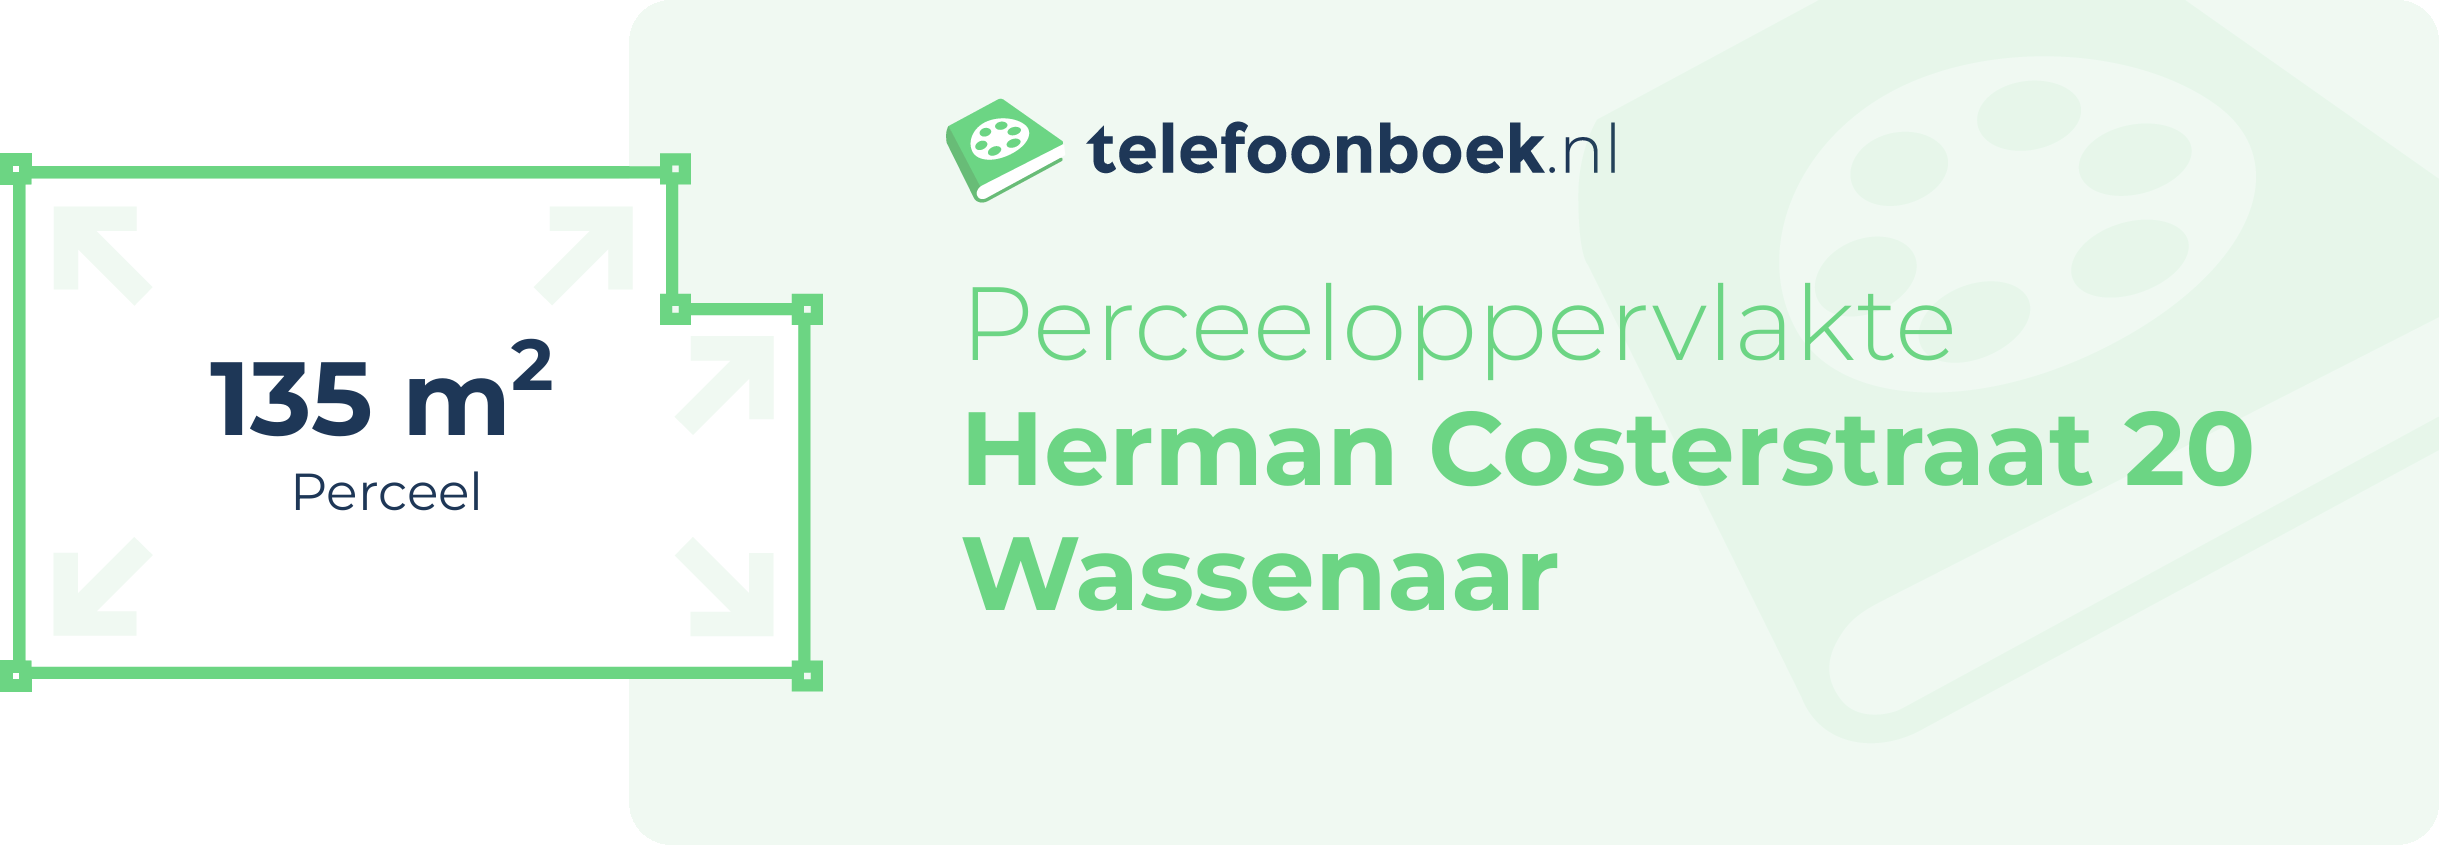 Perceeloppervlakte Herman Costerstraat 20 Wassenaar